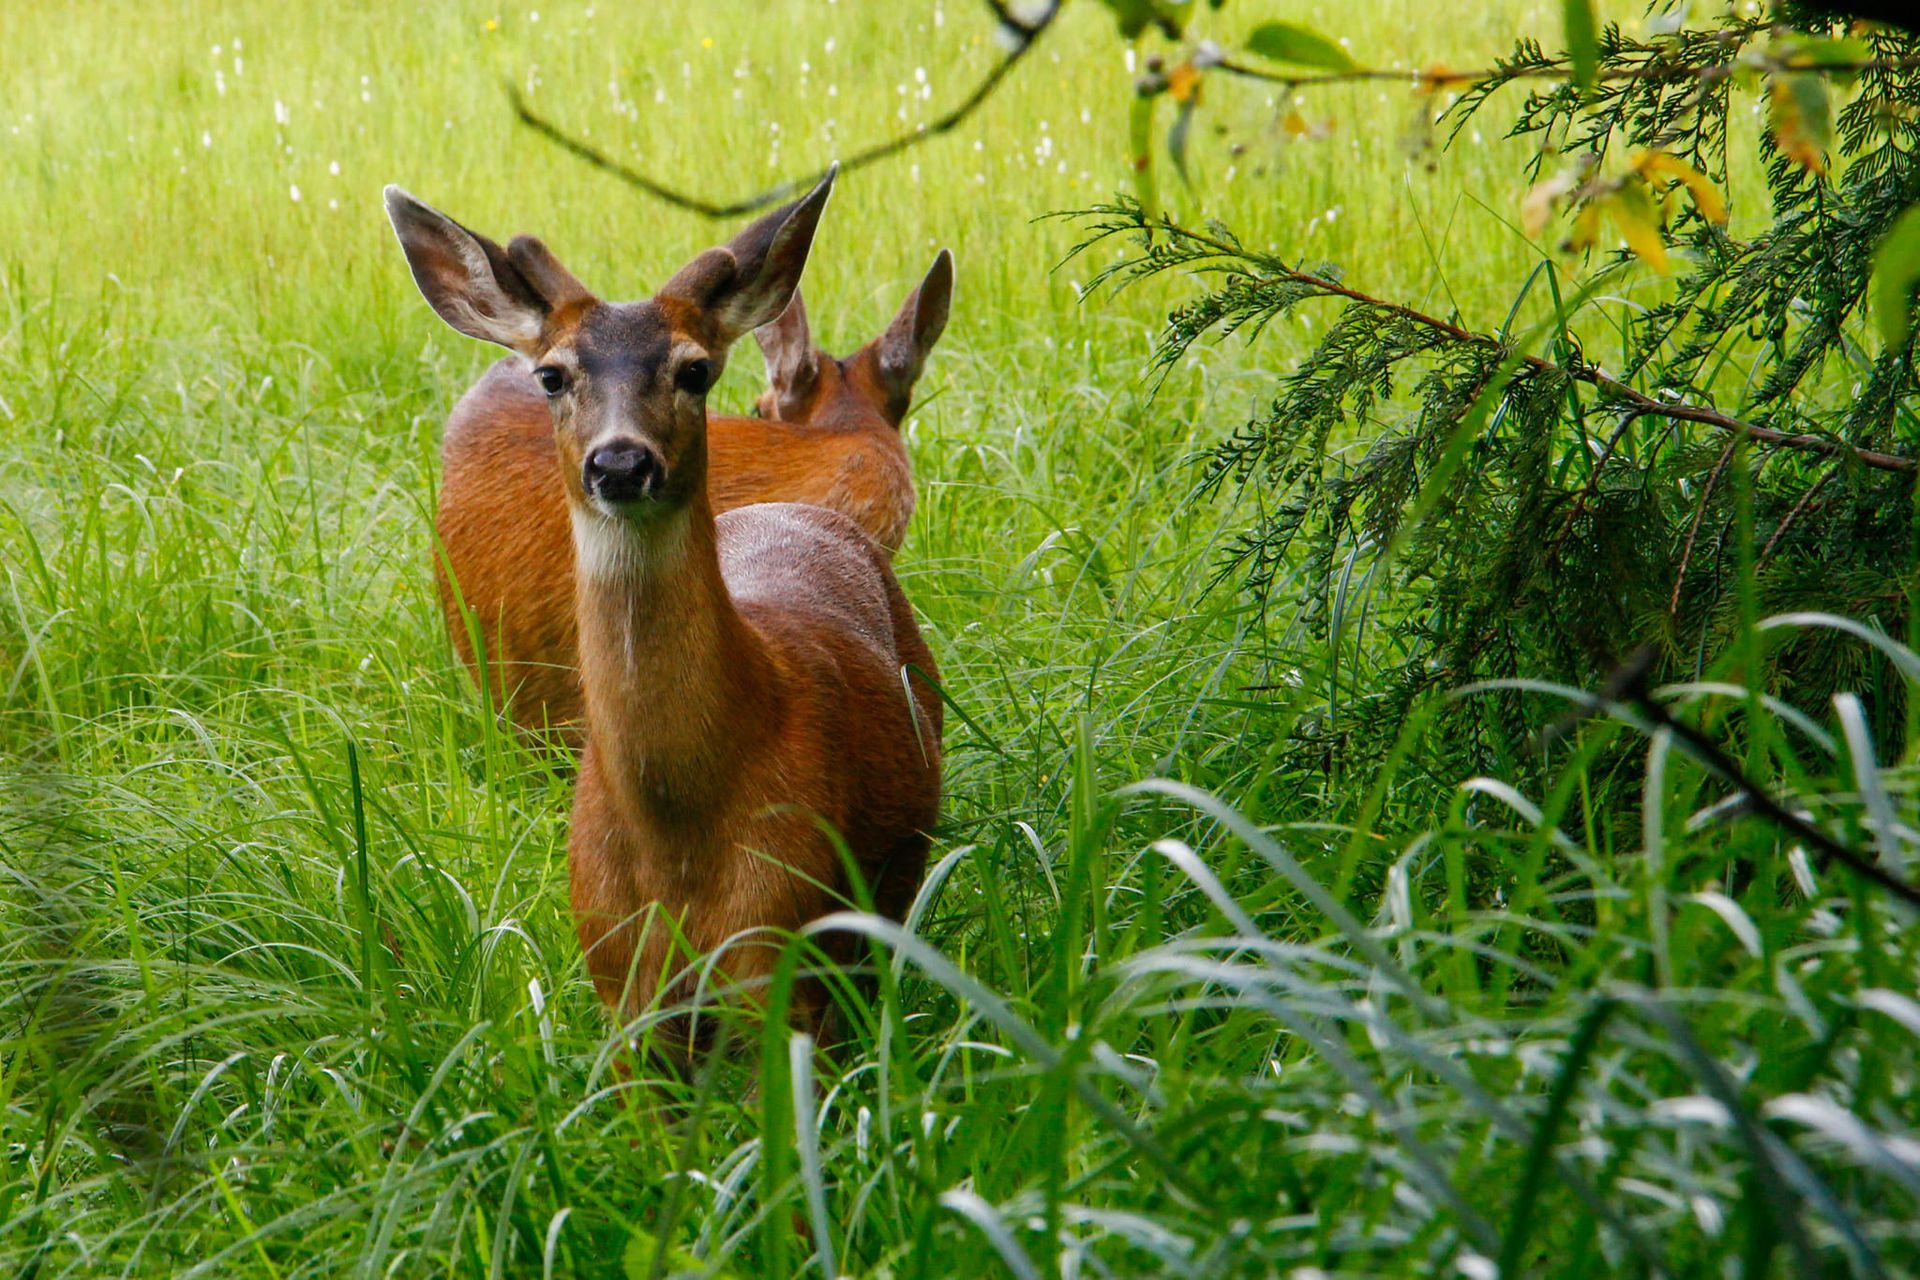 Deer in the grass